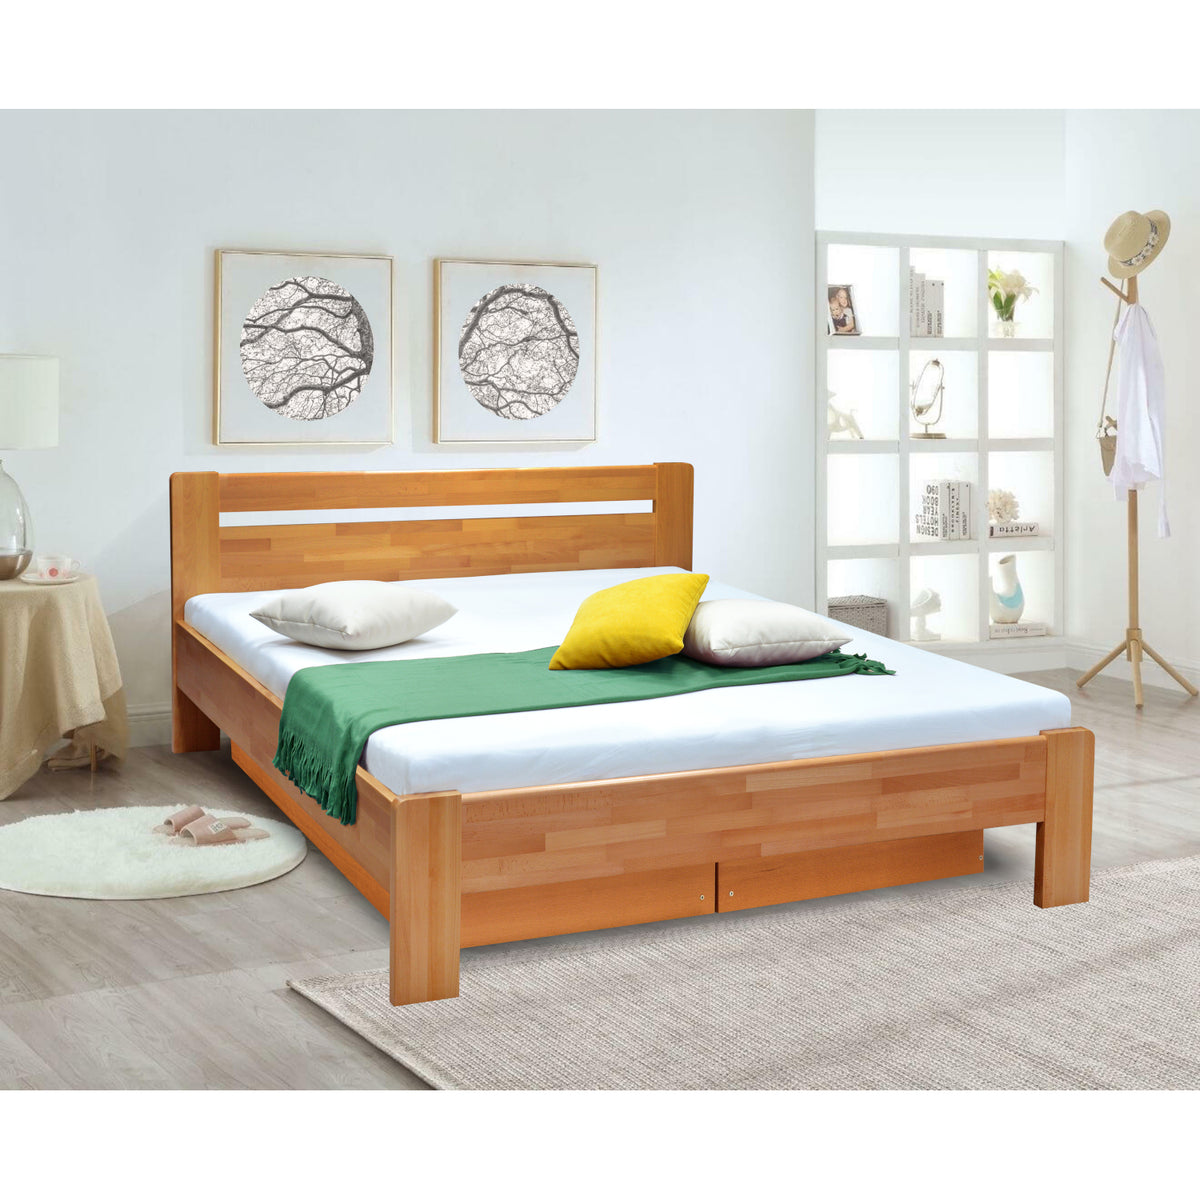 Masivní postel Maribo 2, 160x200, vč. roštu, bez matrace, ořech